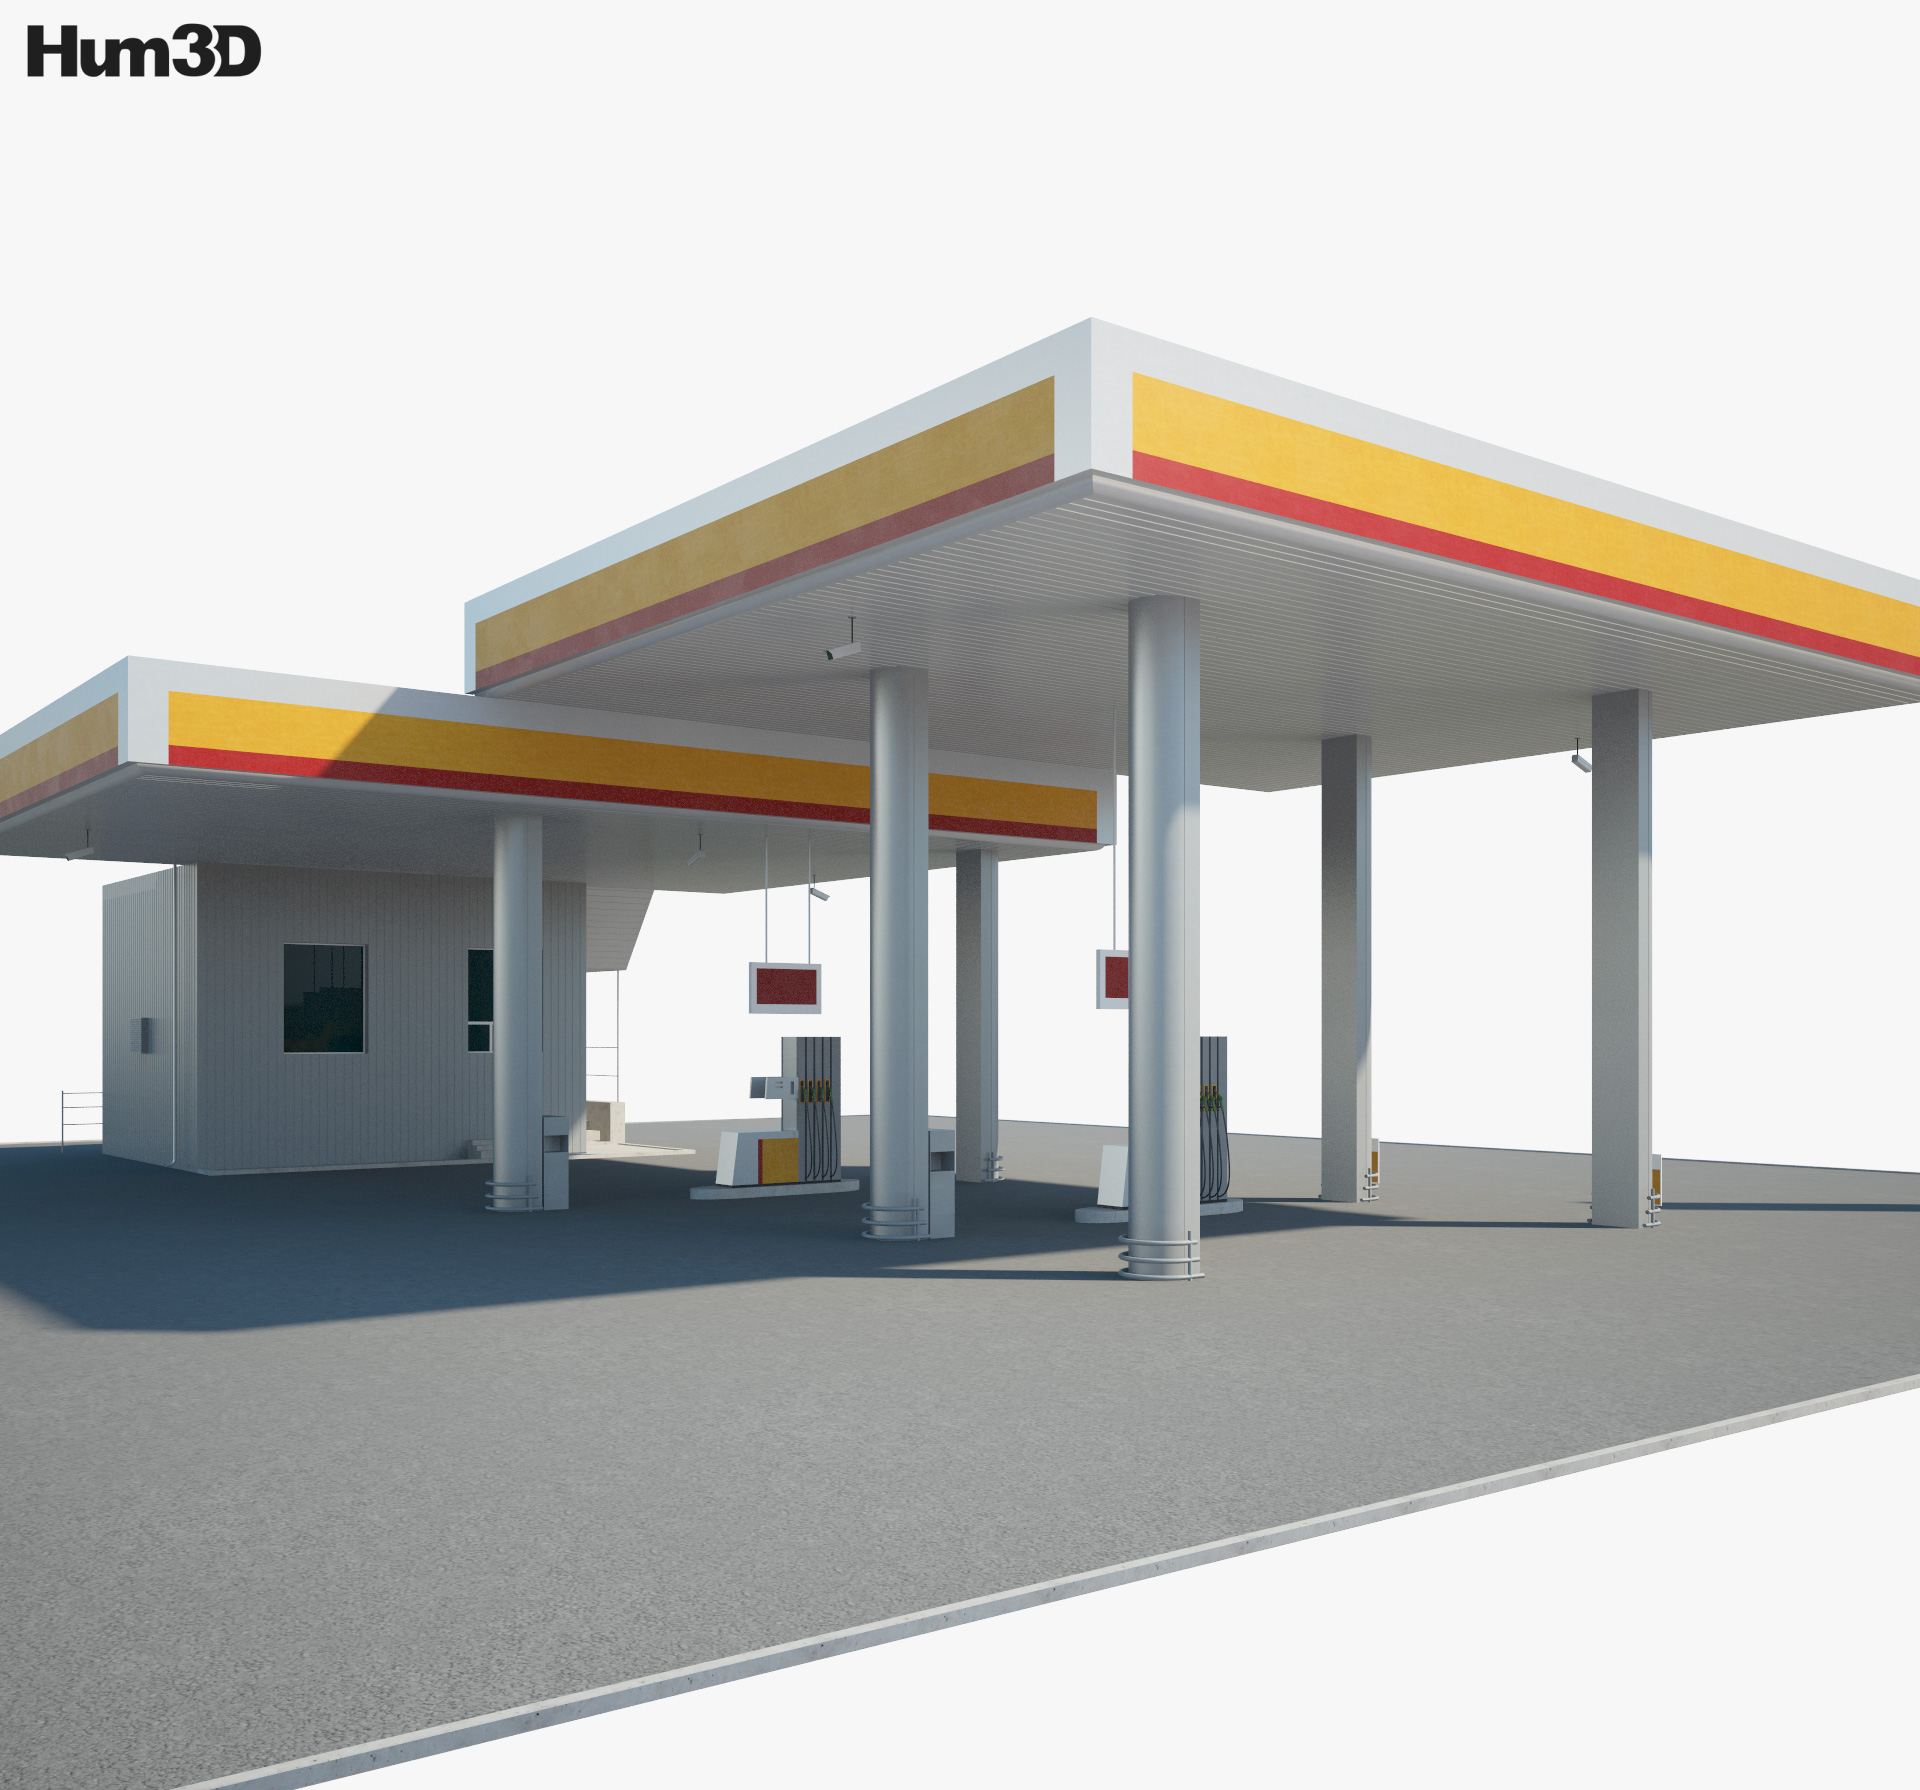 Shell заправочная станция 001 3D модель